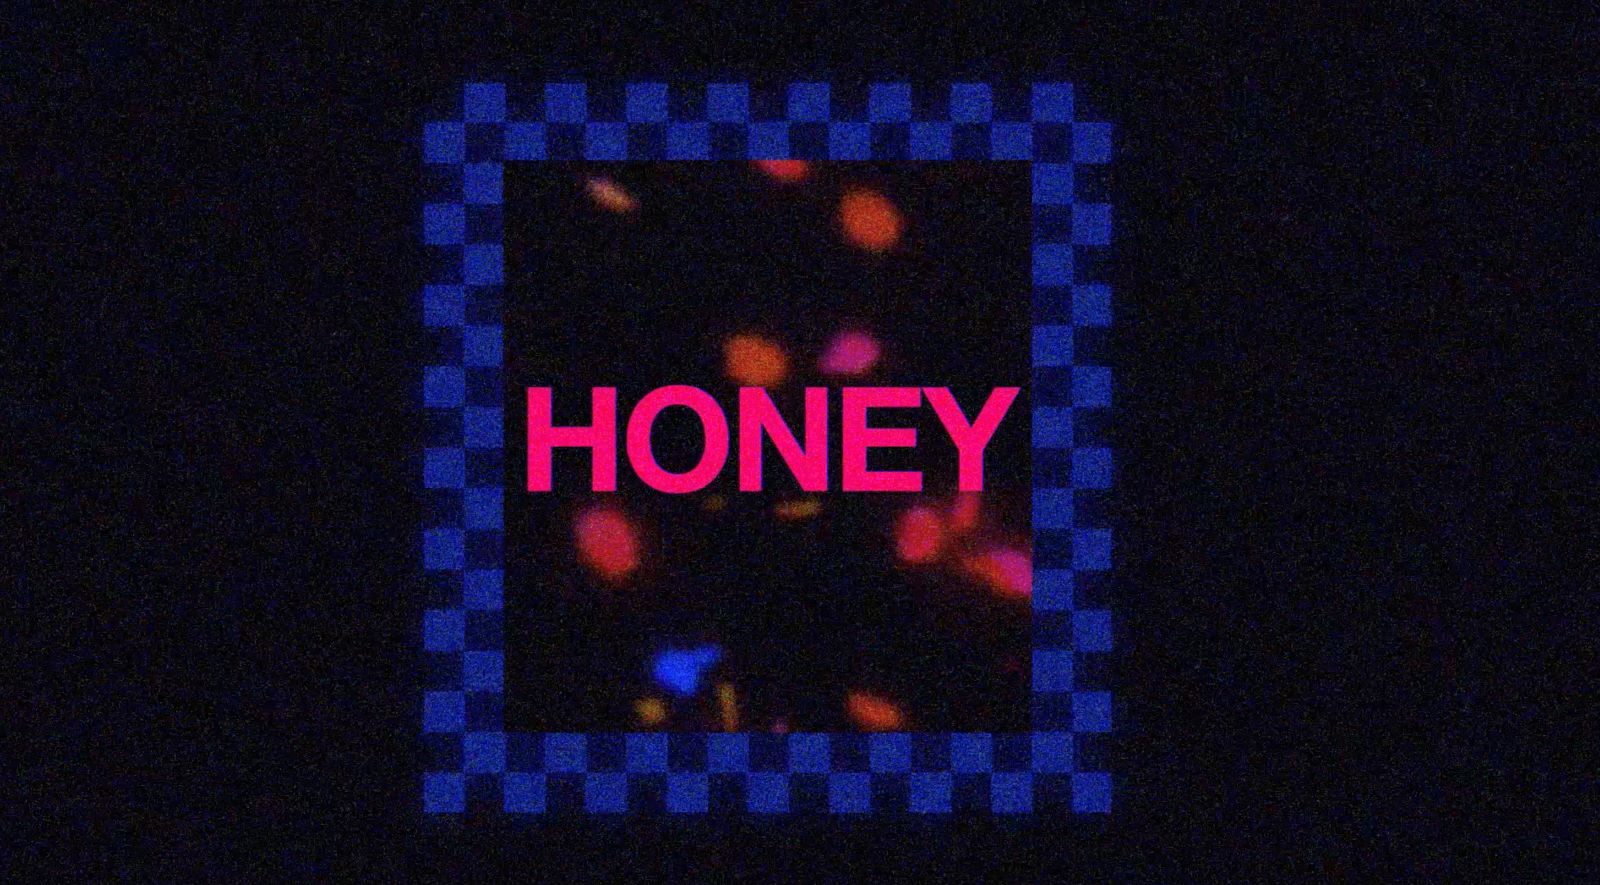 Honey by Vans